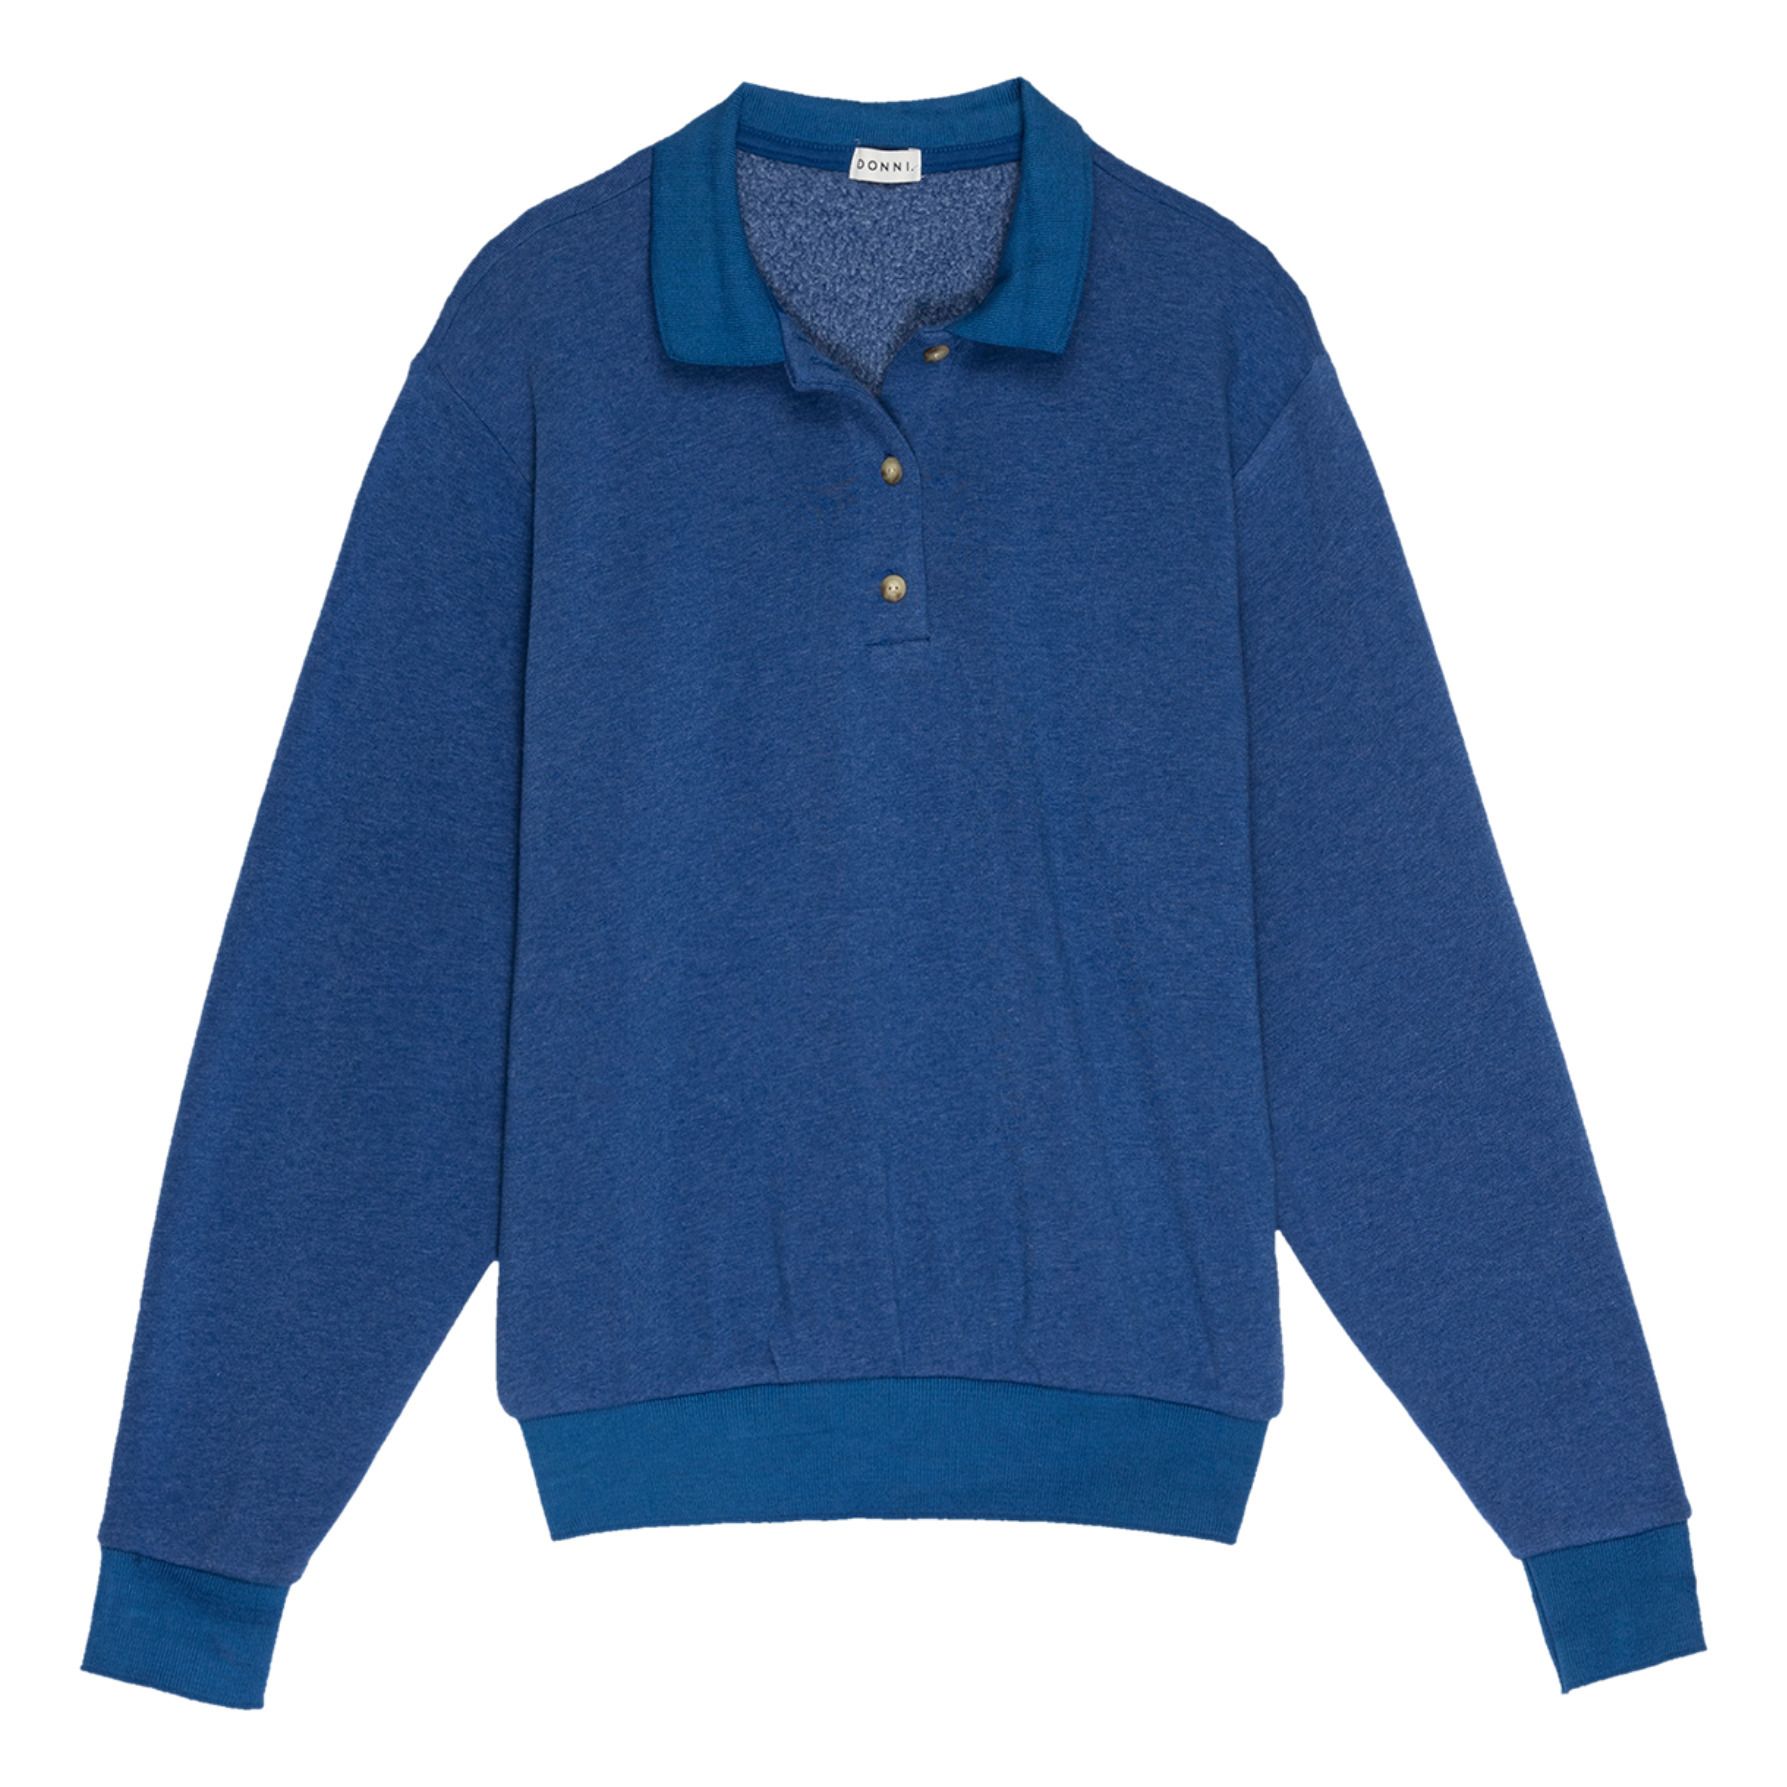 Donni - Polo Sweatshirt Vintage - Femme - Bleu électrique